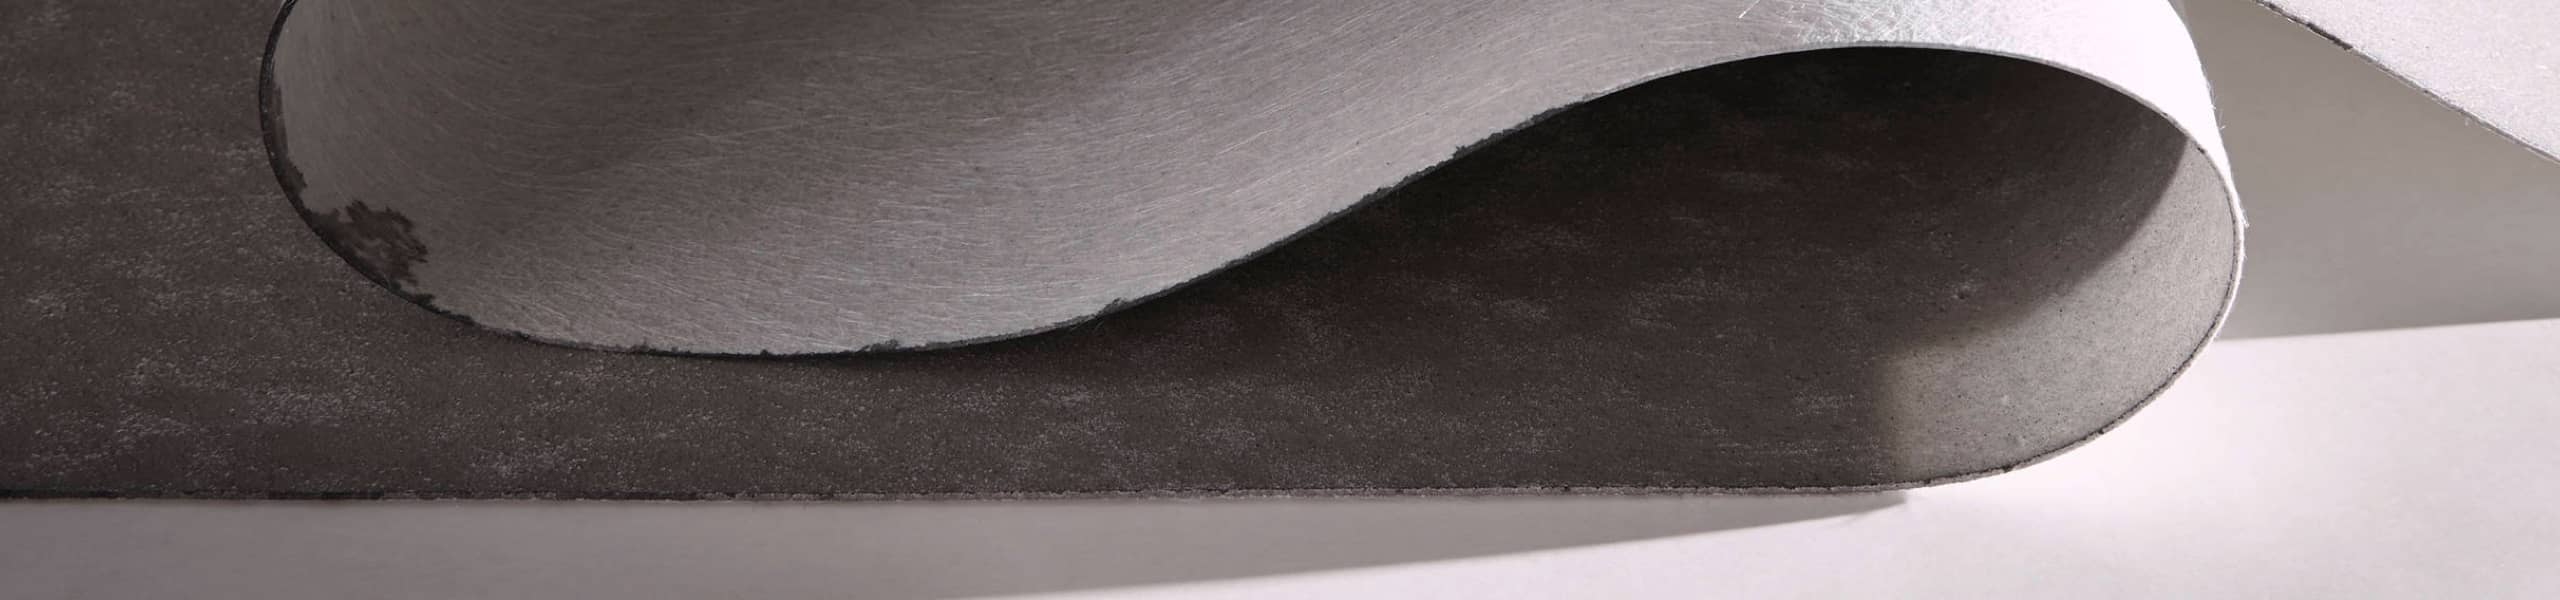 Zoom sur un lé de sol souple de couleur grise en train d'être déroulé.